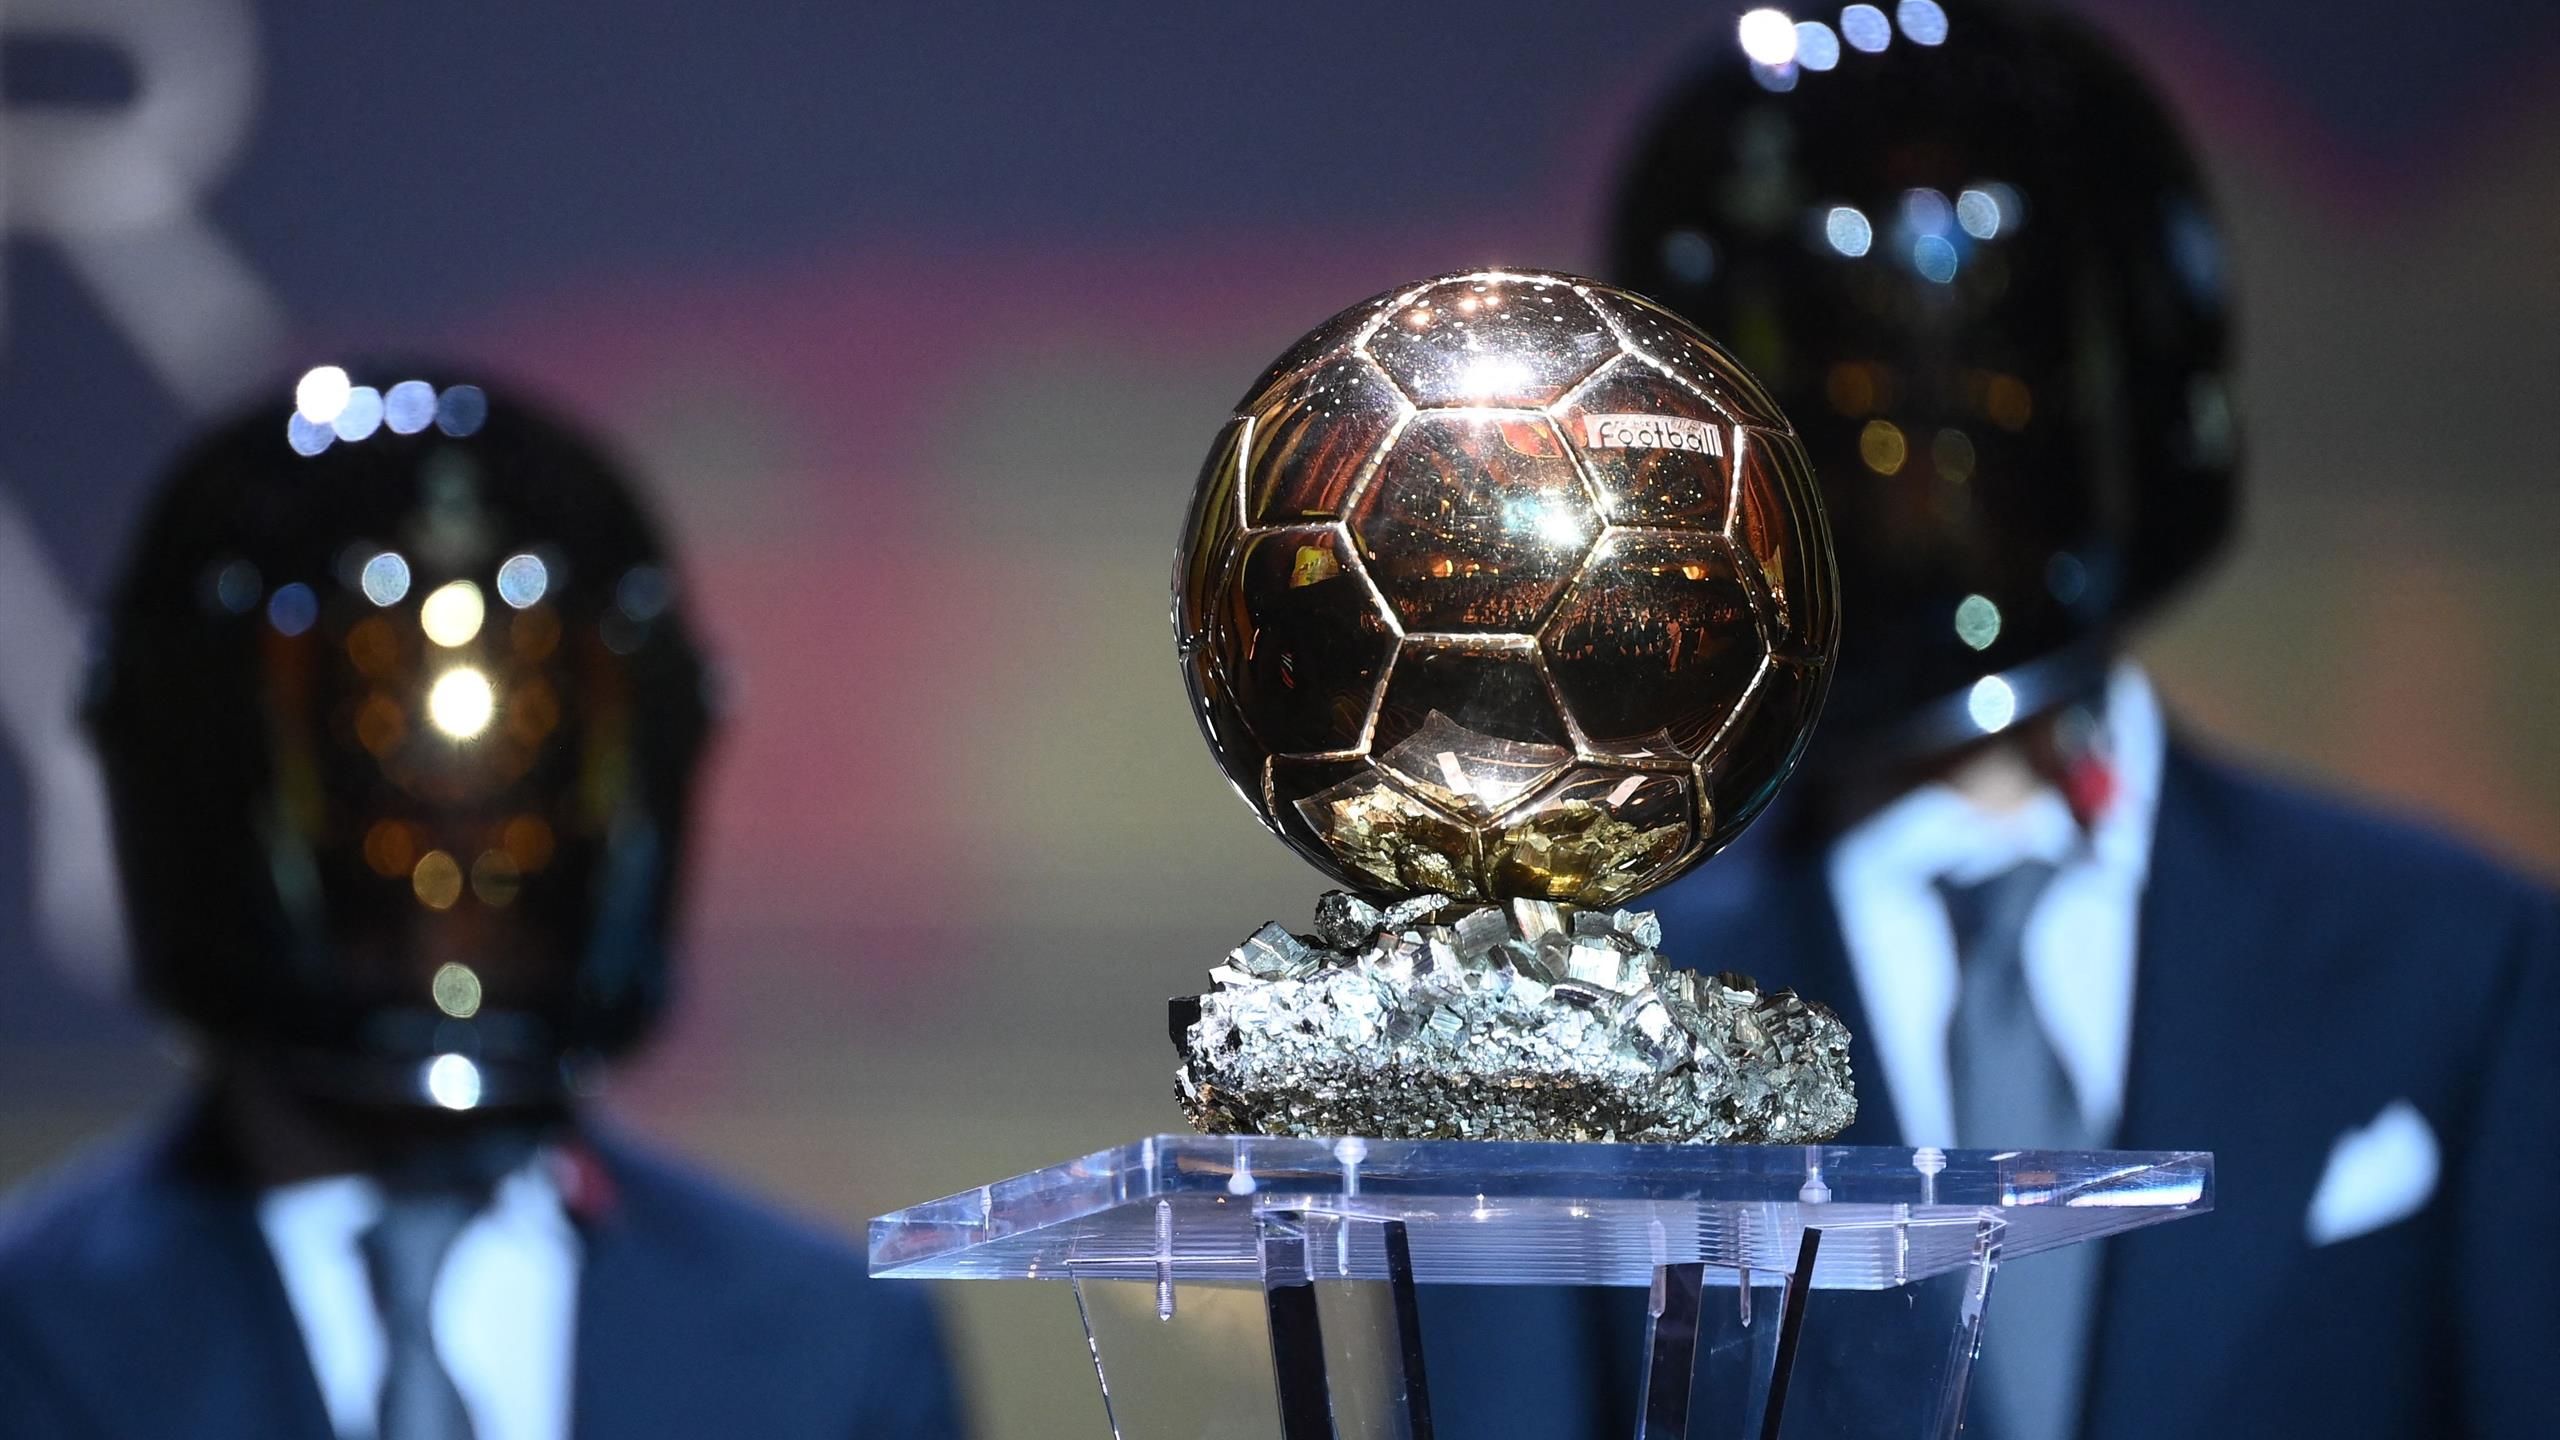 Ballon d'Or - Football news & results - Eurosport